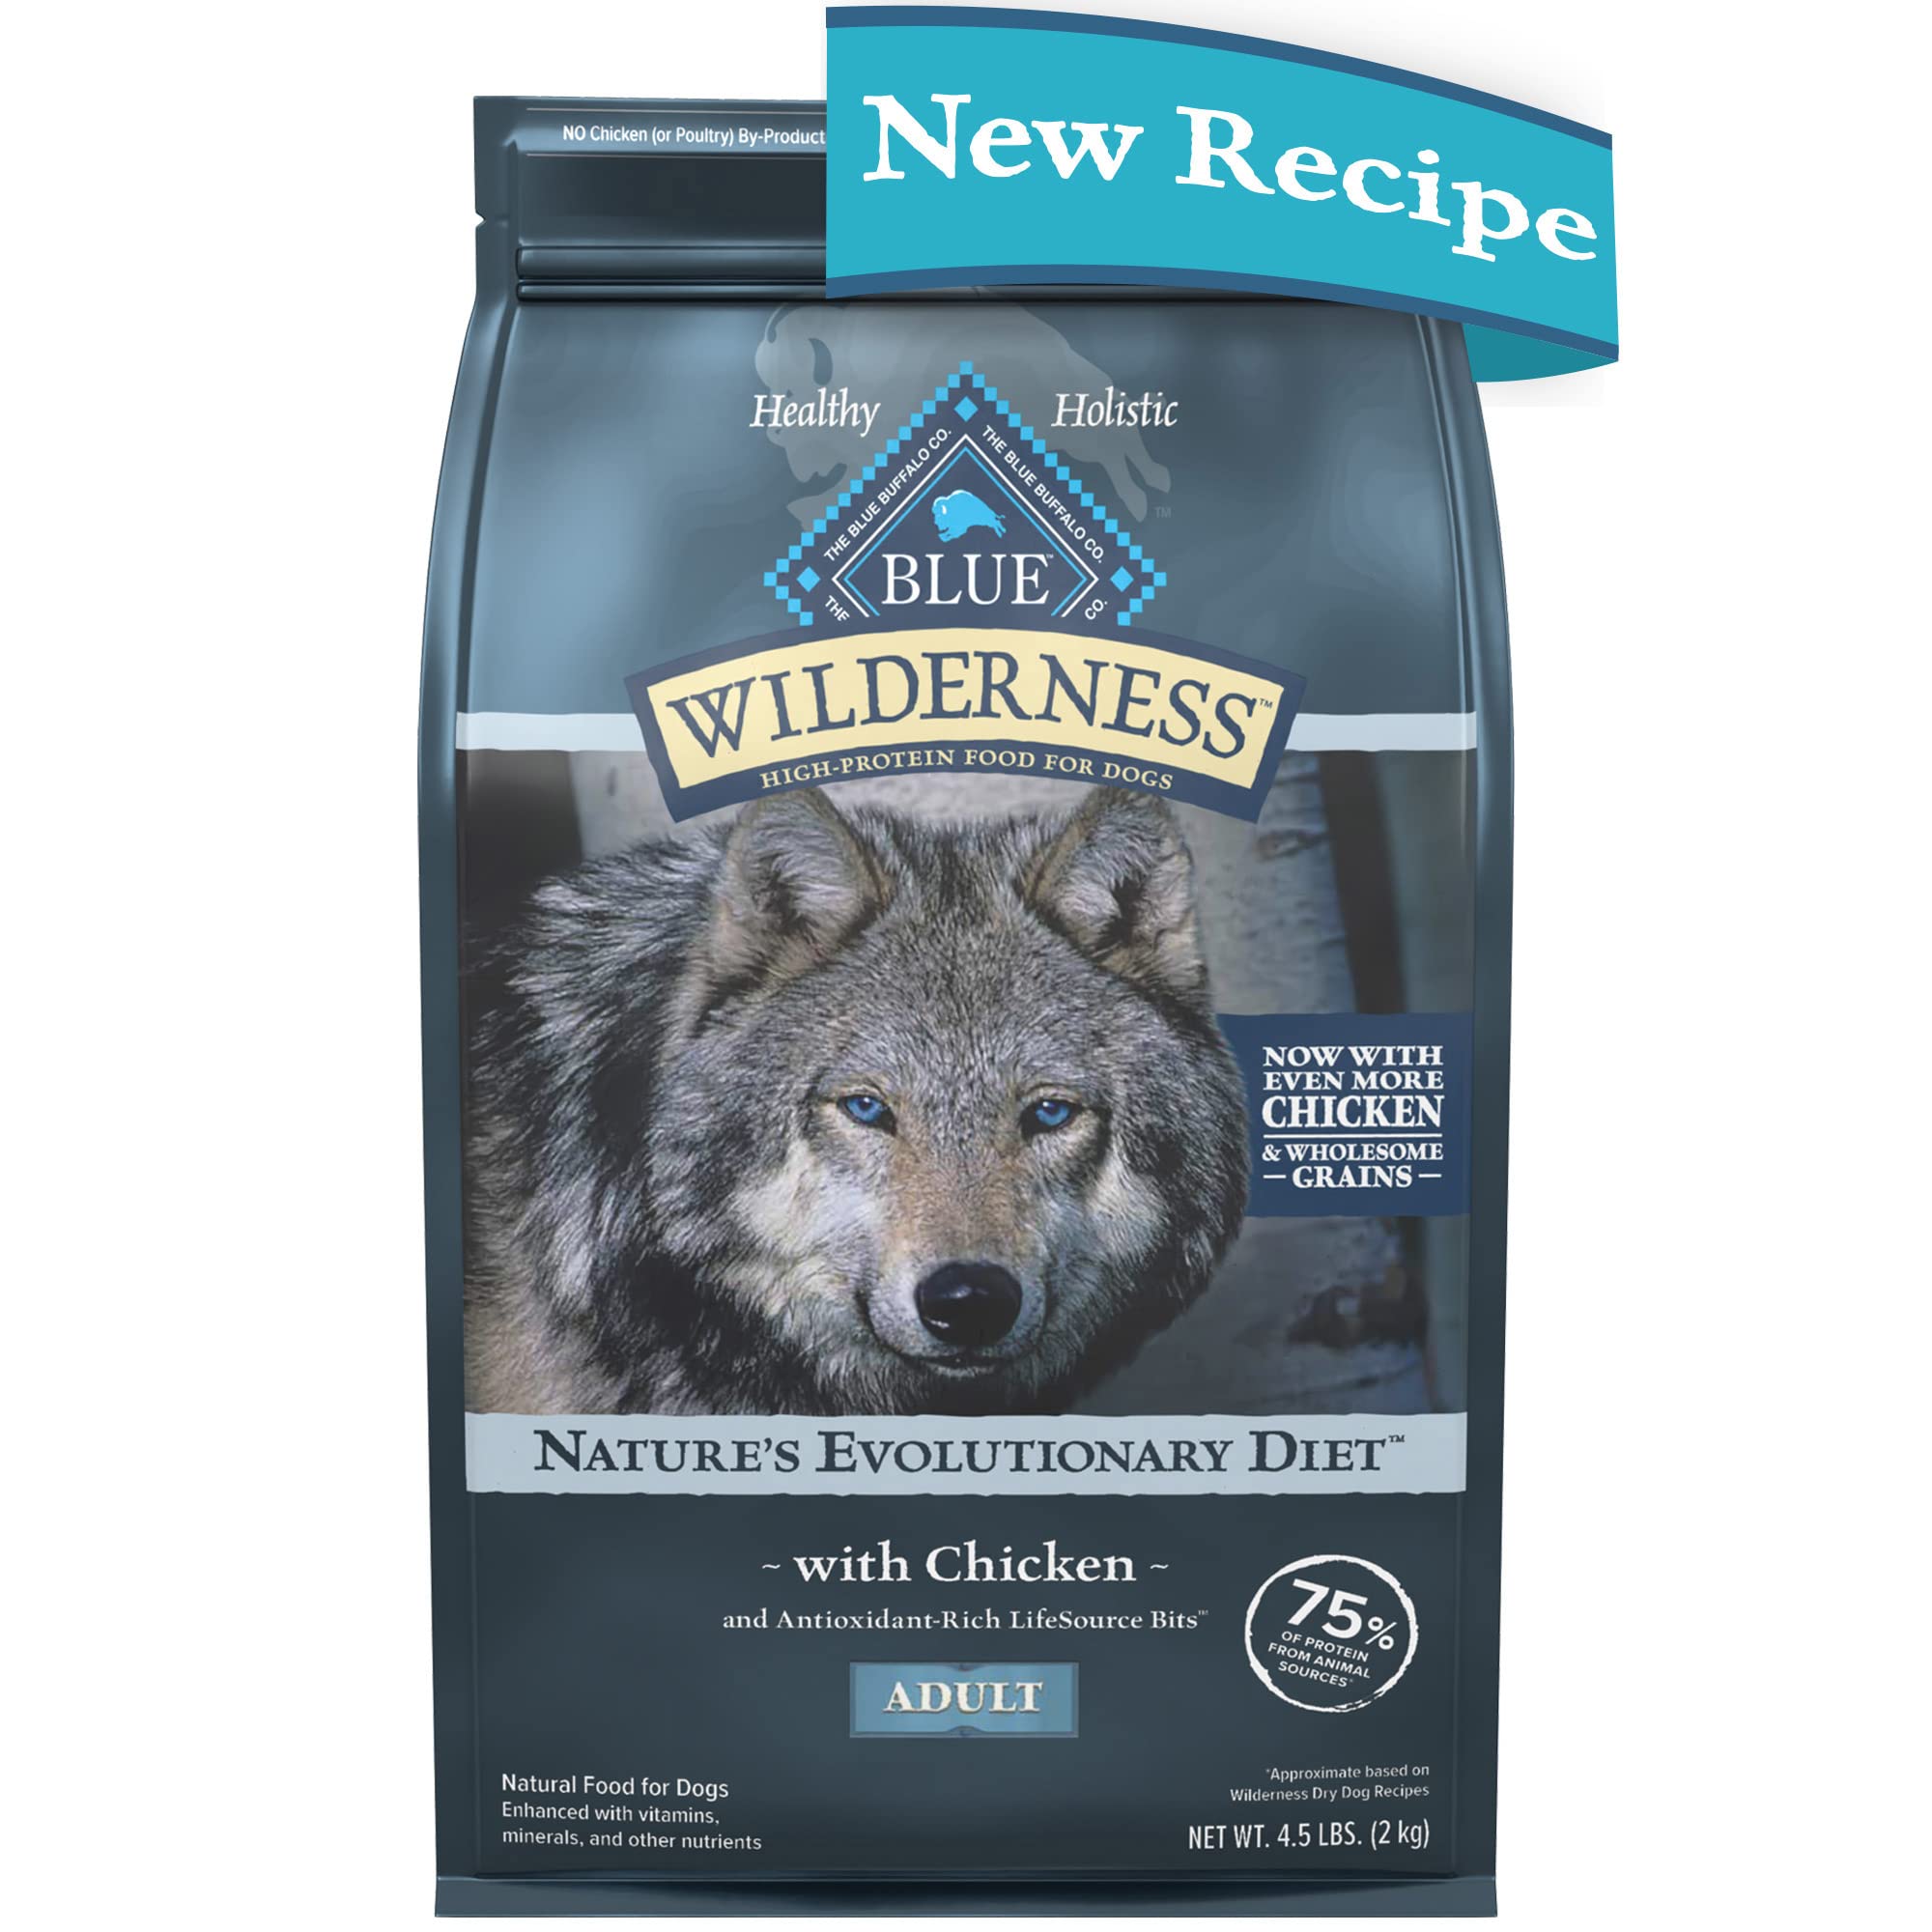 Blue Buffalo طعام الكلاب الجافة الطبيعي عالي البروتين من ويلدرنس بالإضافة إلى الحبوب الصحية